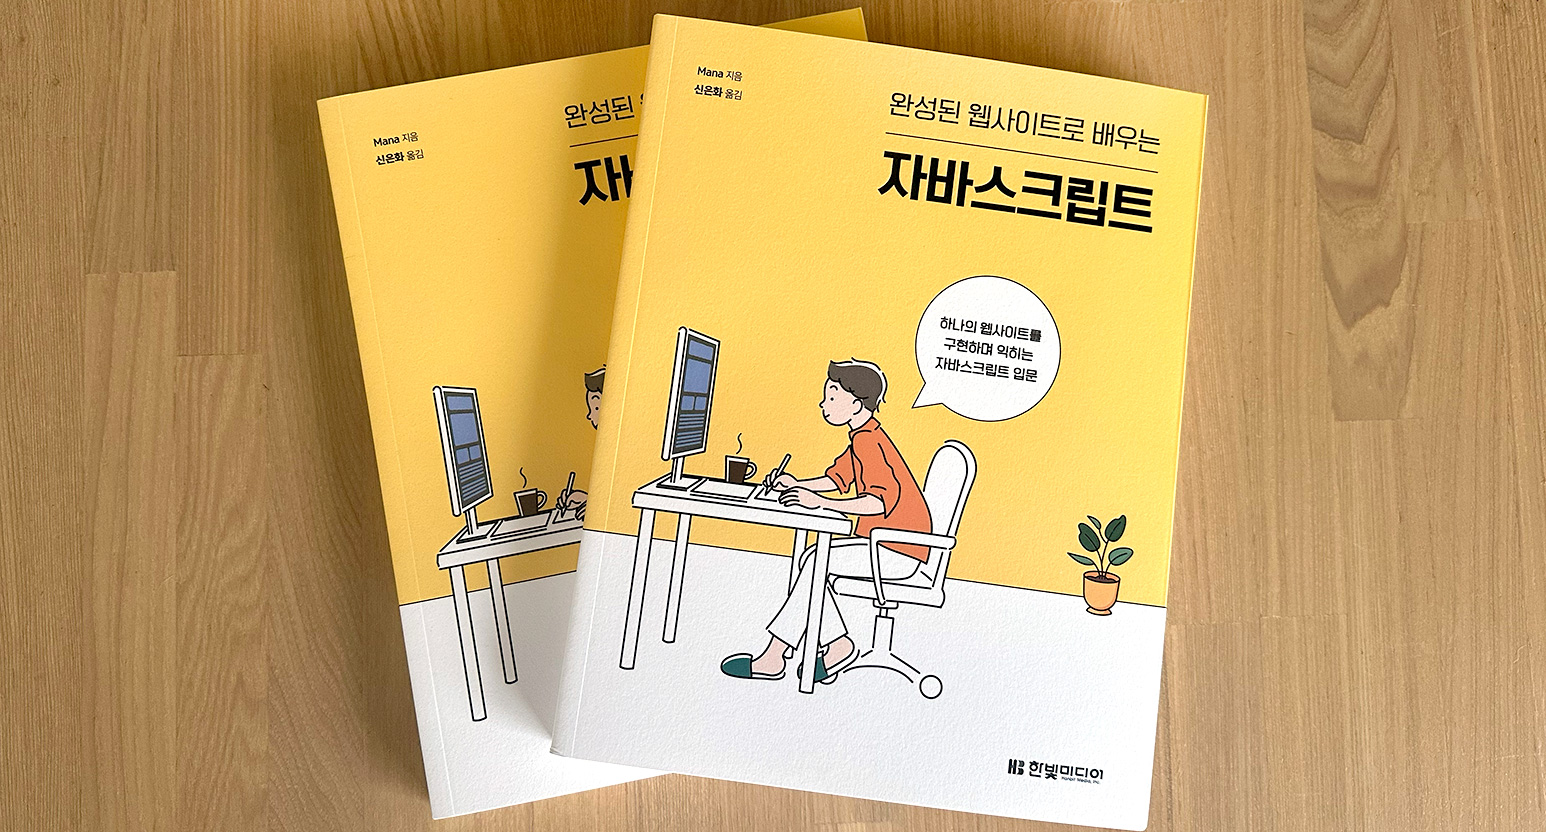 拙著『1冊ですべて身につくJavaScript入門講座』の韓国語版が出版されました！